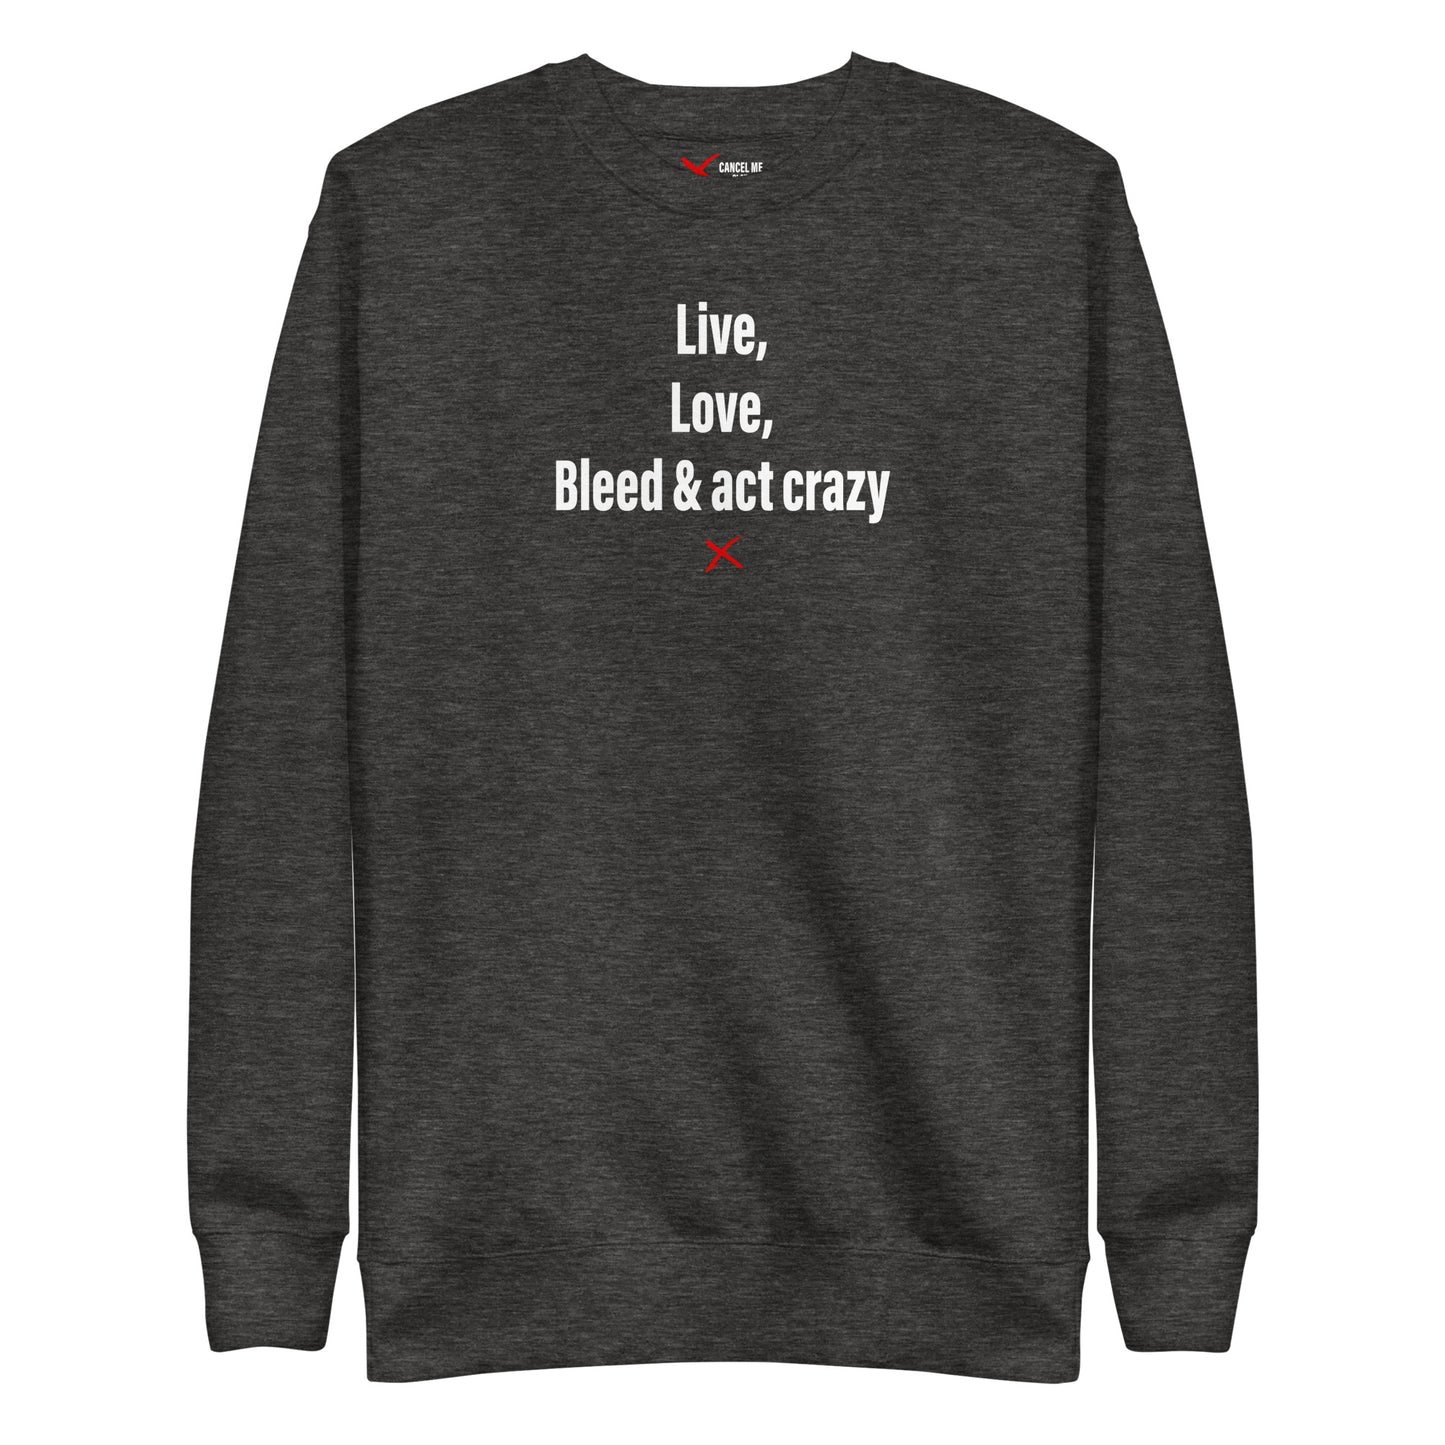 Live, love, bleed & act crazy - Sweatshirt